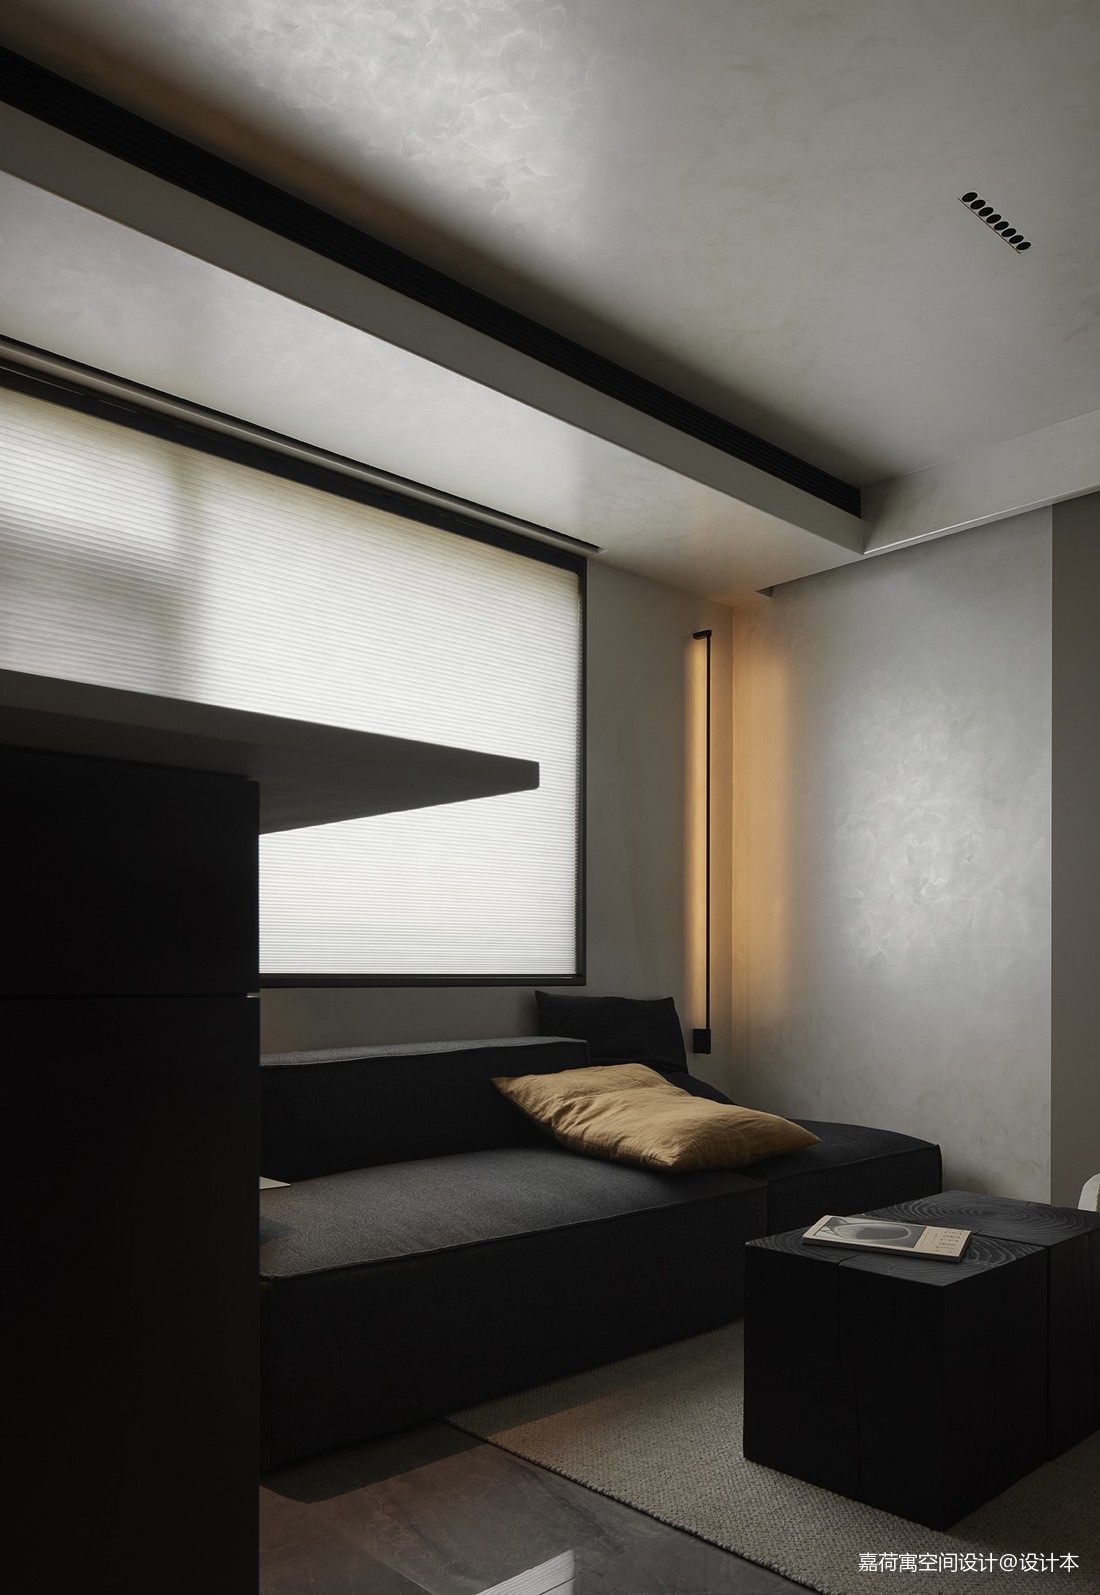 乌托邦 - 欧式风格三室两厅装修效果图 - adazhongt设计效果图 - 躺平设计家